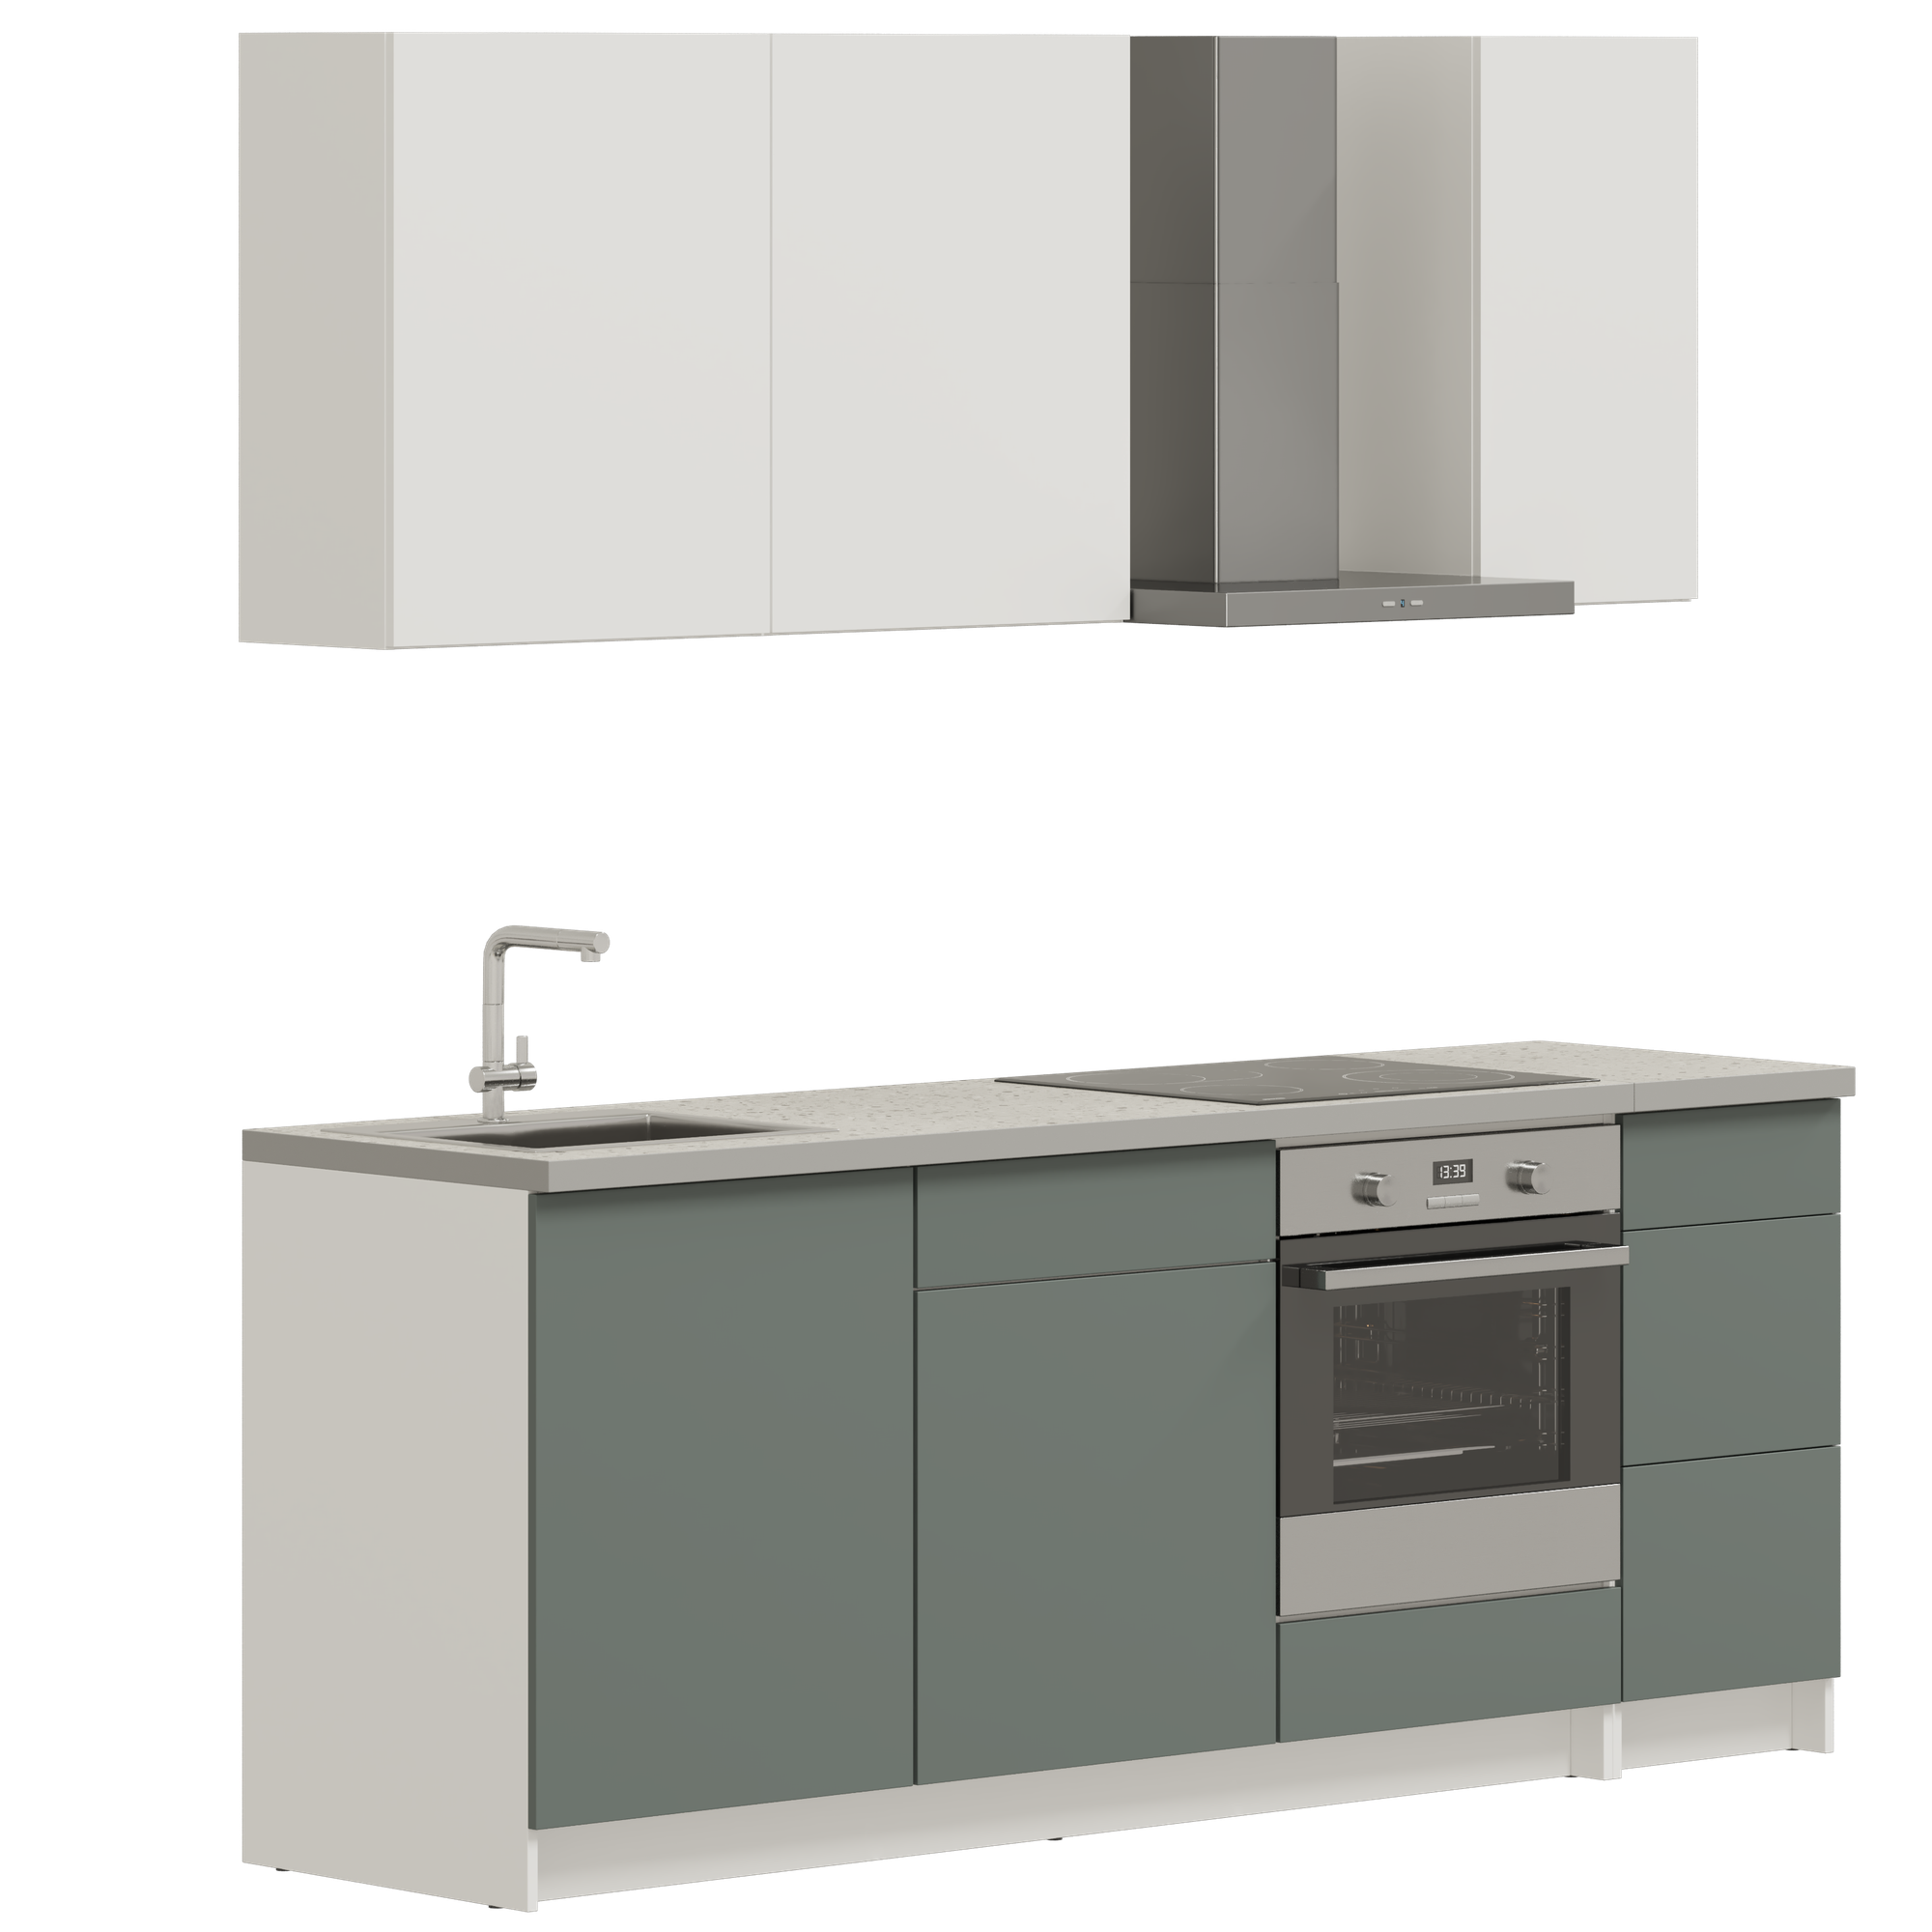 Кухонный гарнитур, кухня прямая Pragma Elinda 222 см (2,22 м), под встраиваемую духовку, со столешницей, ЛДСП, дымчатый зеленый/белый